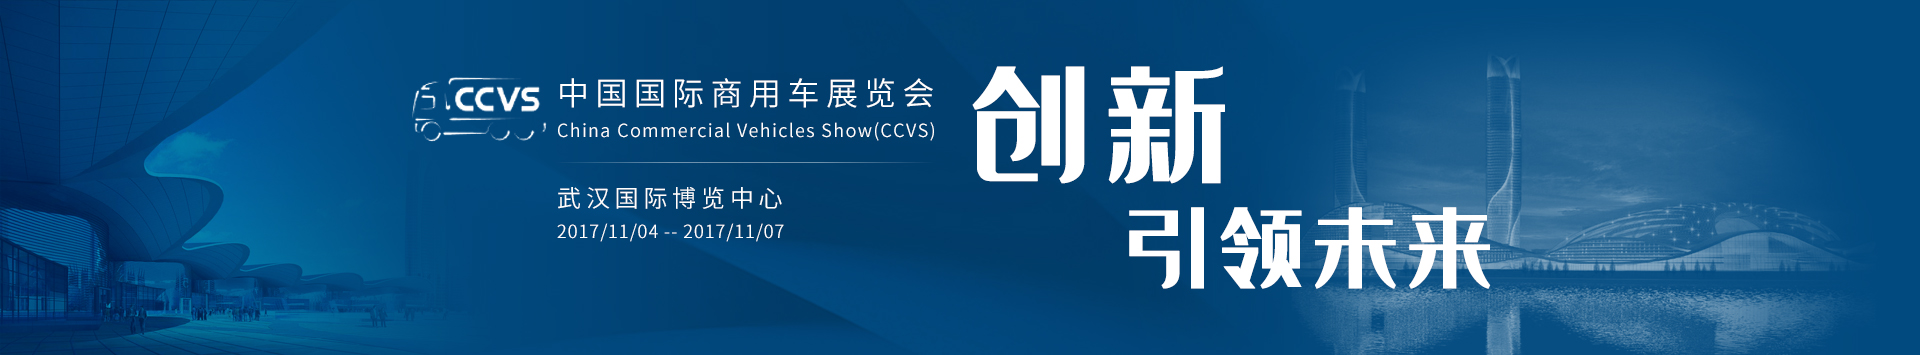 创新引领未来——2017中国国际商用车展览会